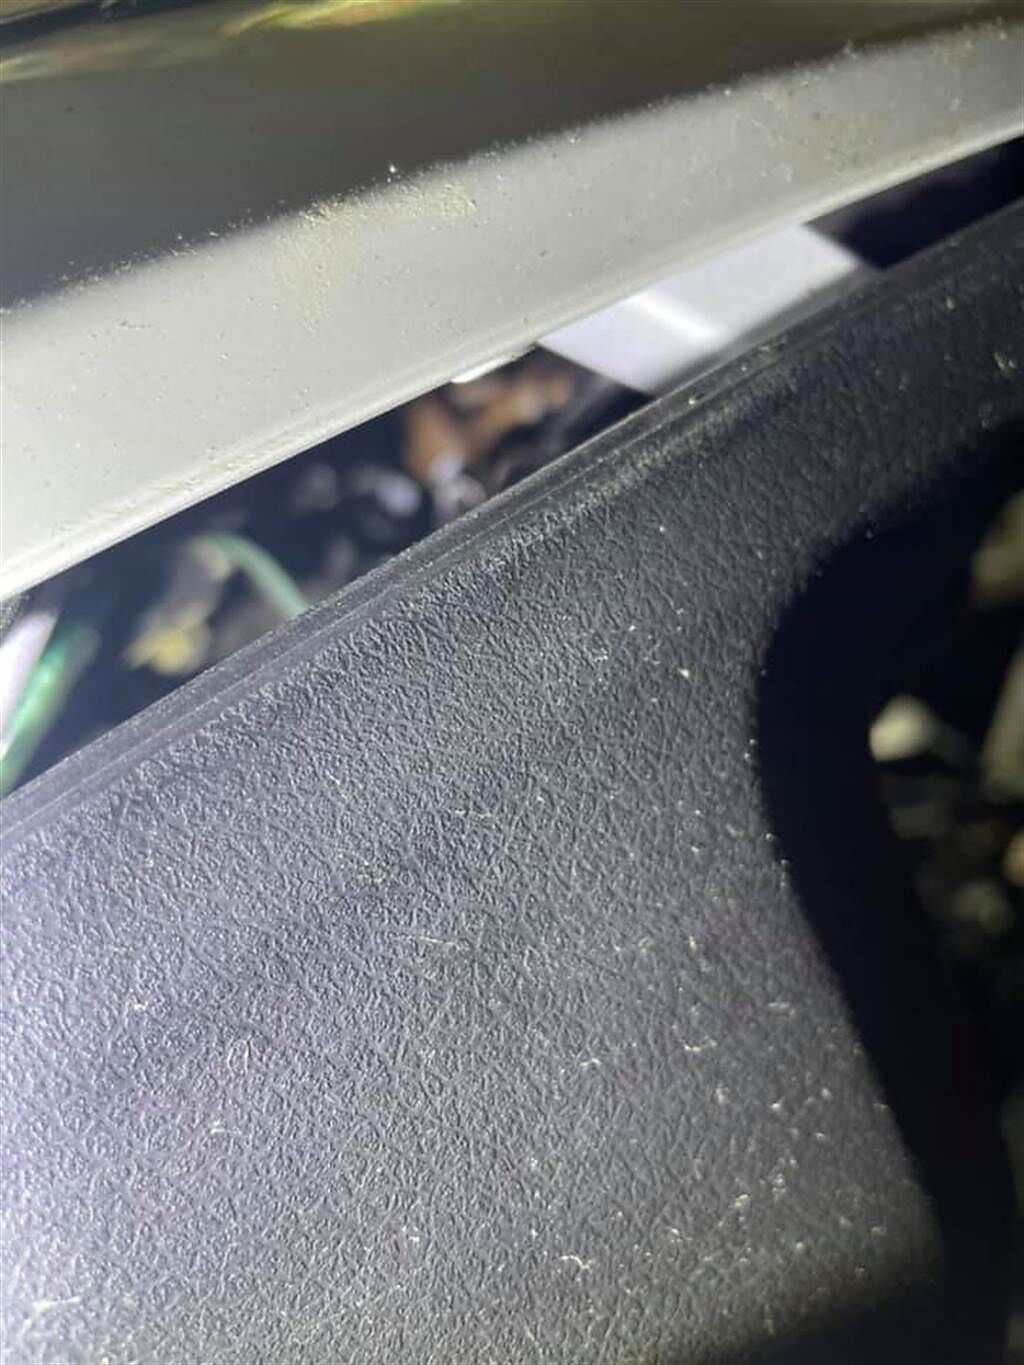 機車引擎蓋縫隙間，隱約可以看到棕色的龜殼花。(圖/截自臉書 我是東湖人)